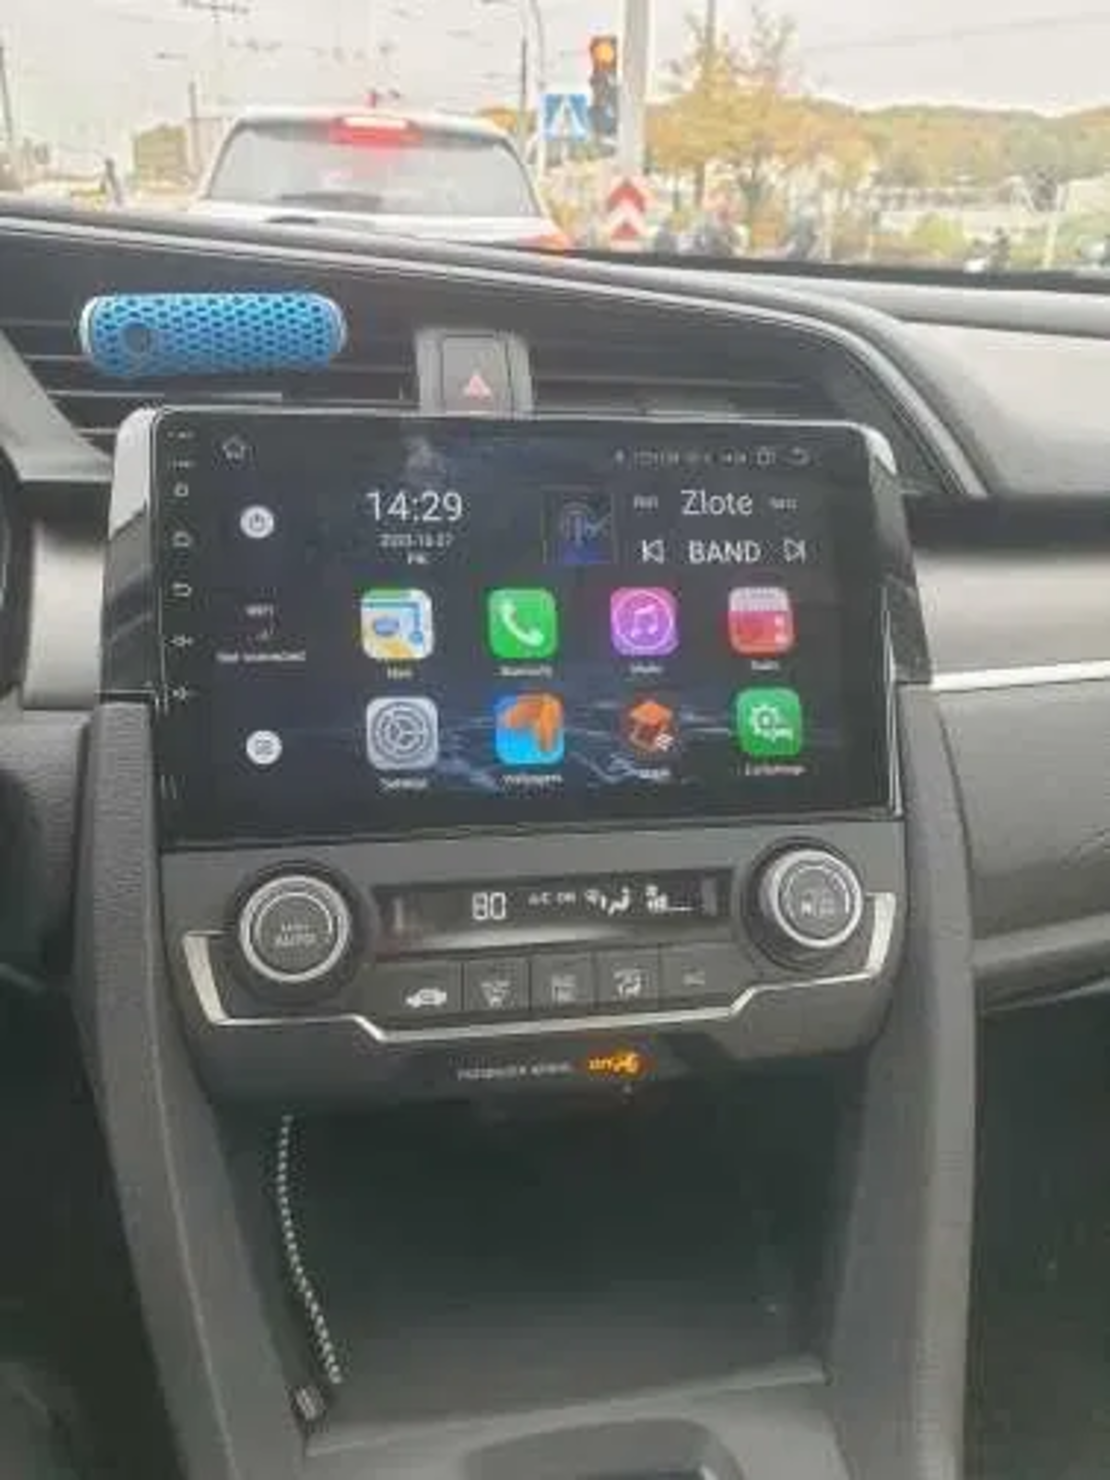 Honda Civic 2017 - 2021 Android Multimedia/Navigation